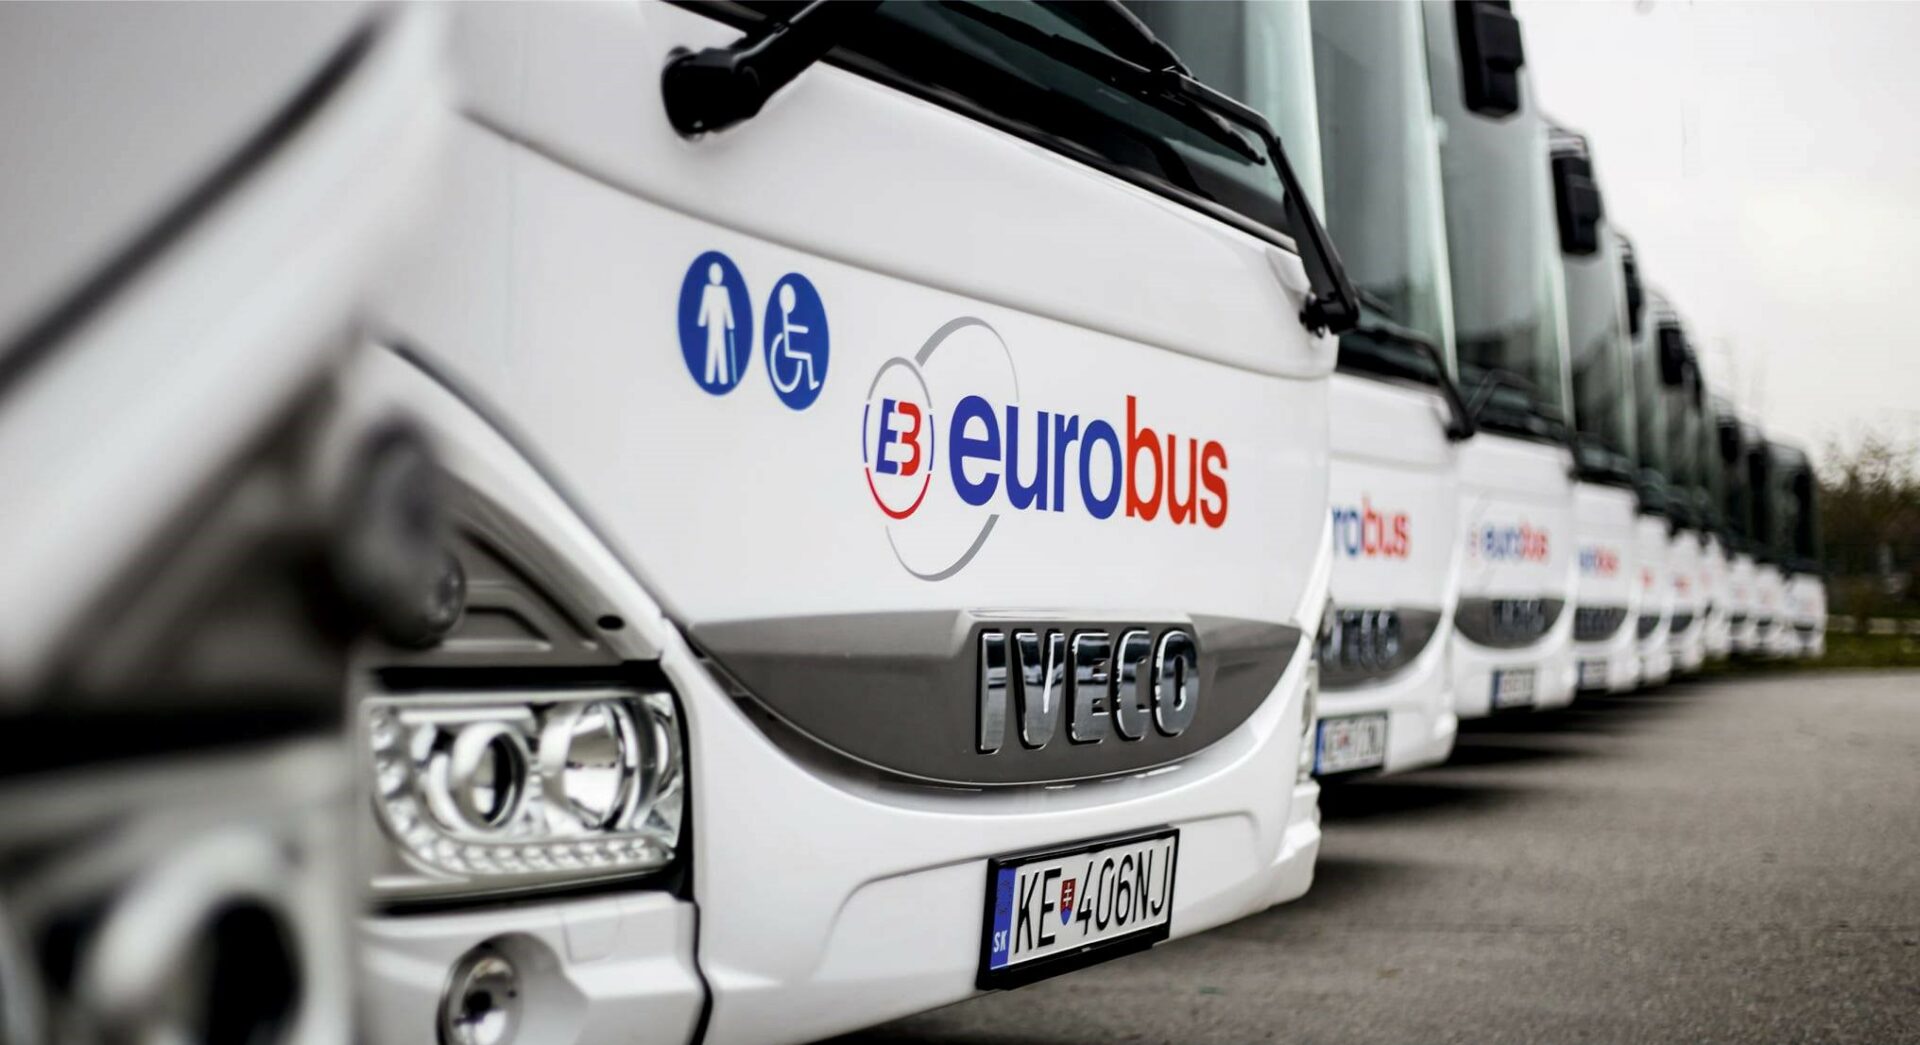 Odborári sa ani v treťom kole rokovaní nedohodli s vedením eurobusu, požiadali o sprostredkovateľa